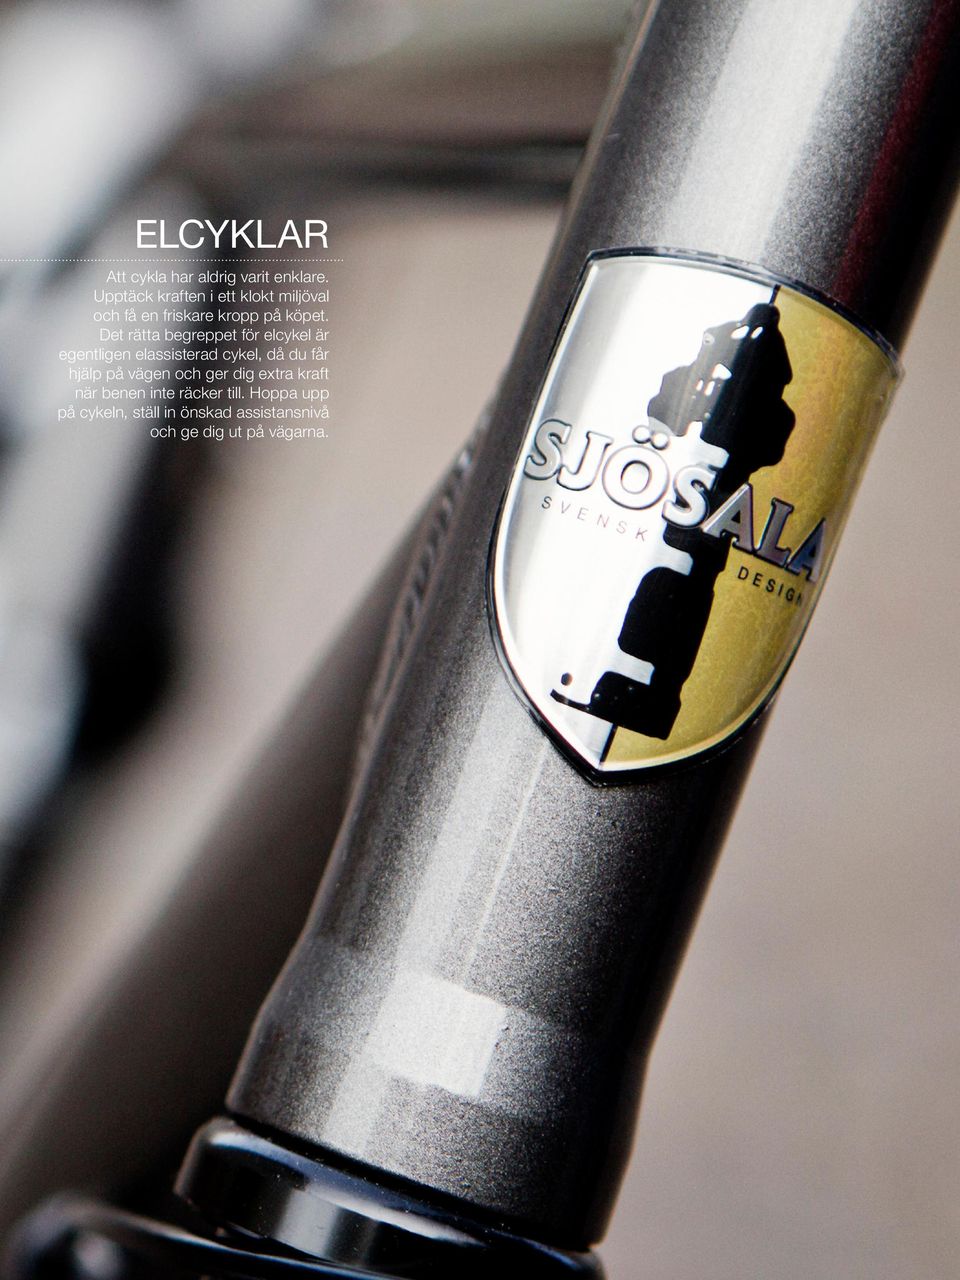 Det rätta begreppet för elcykel är egentligen elassisterad cykel, då du får hjälp